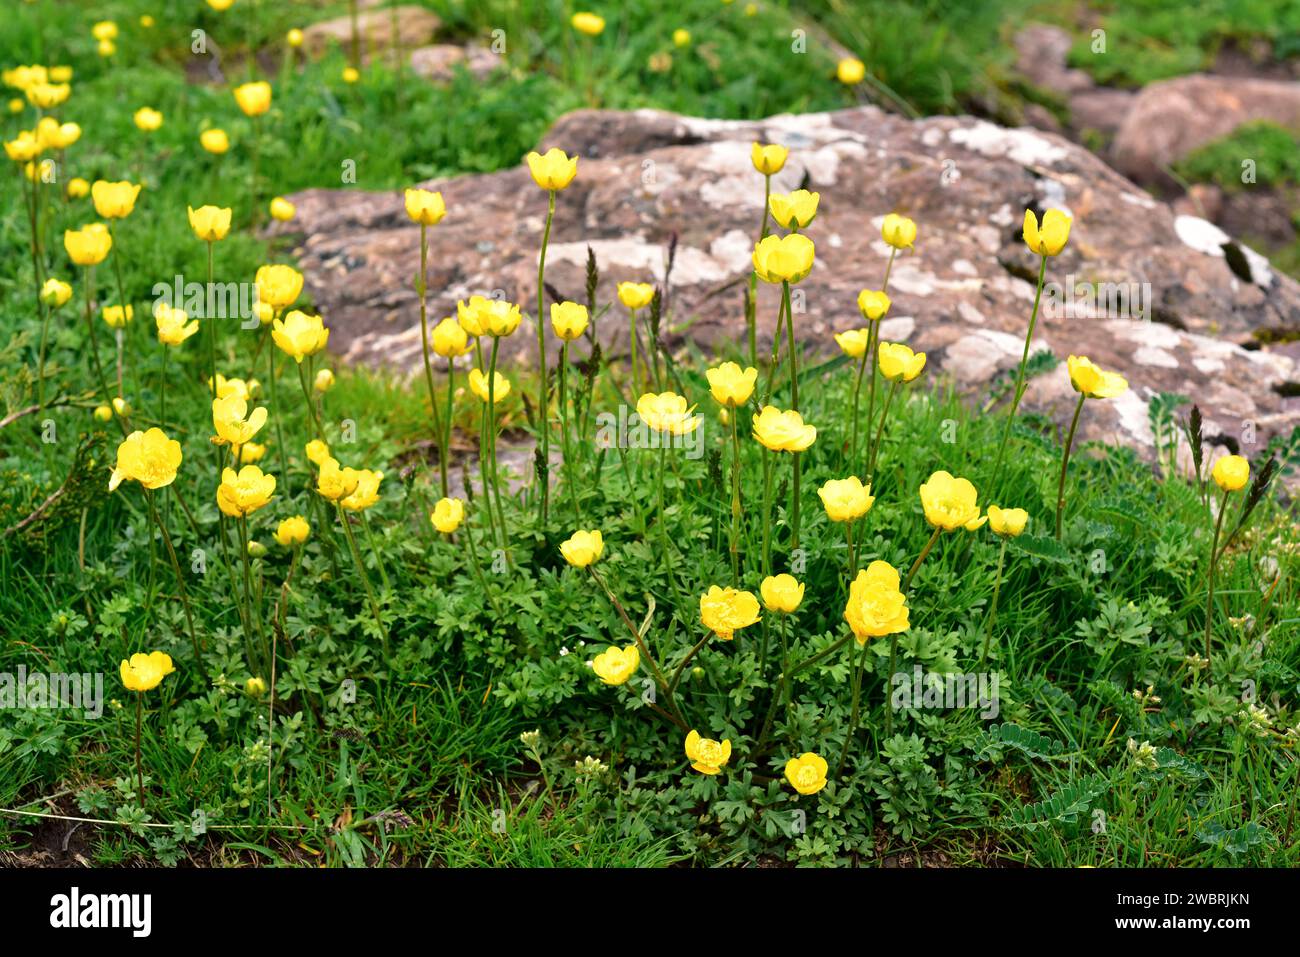 Boton de oro (Ranunculus ollissiponensis) ist ein mehrjähriges Kraut, das auf der zentralen iberischen Halbinsel beheimatet ist. Dieses Foto wurde in Babia, Provinz Leon, Casti aufgenommen Stockfoto